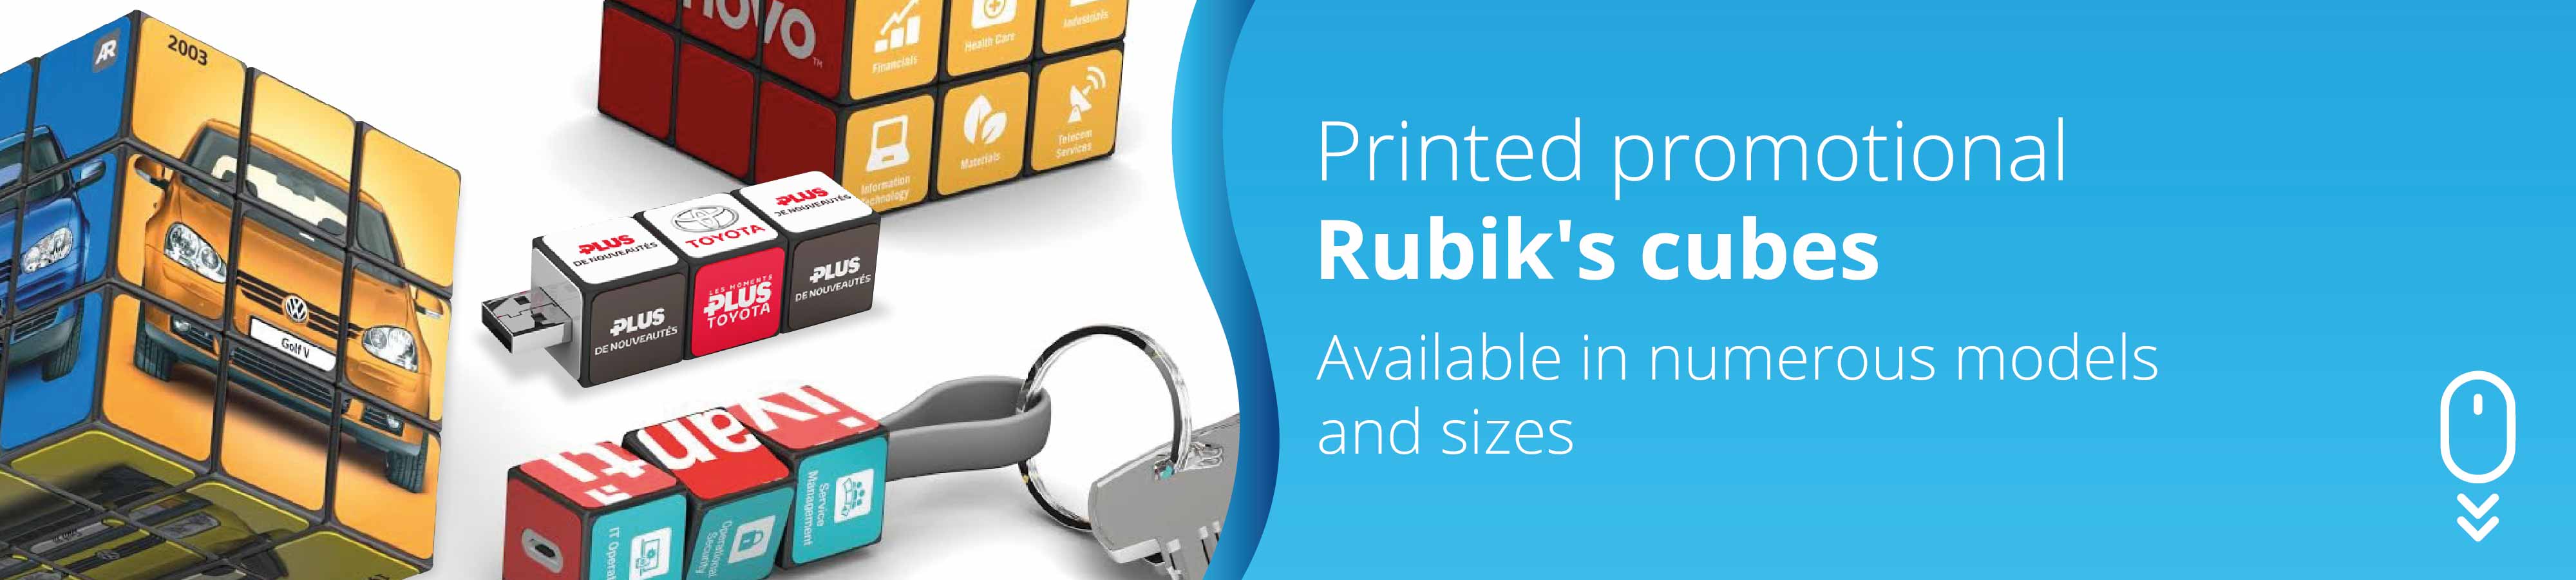 printed-promotional-rubiks-cubesaeCBKPuFejs9v